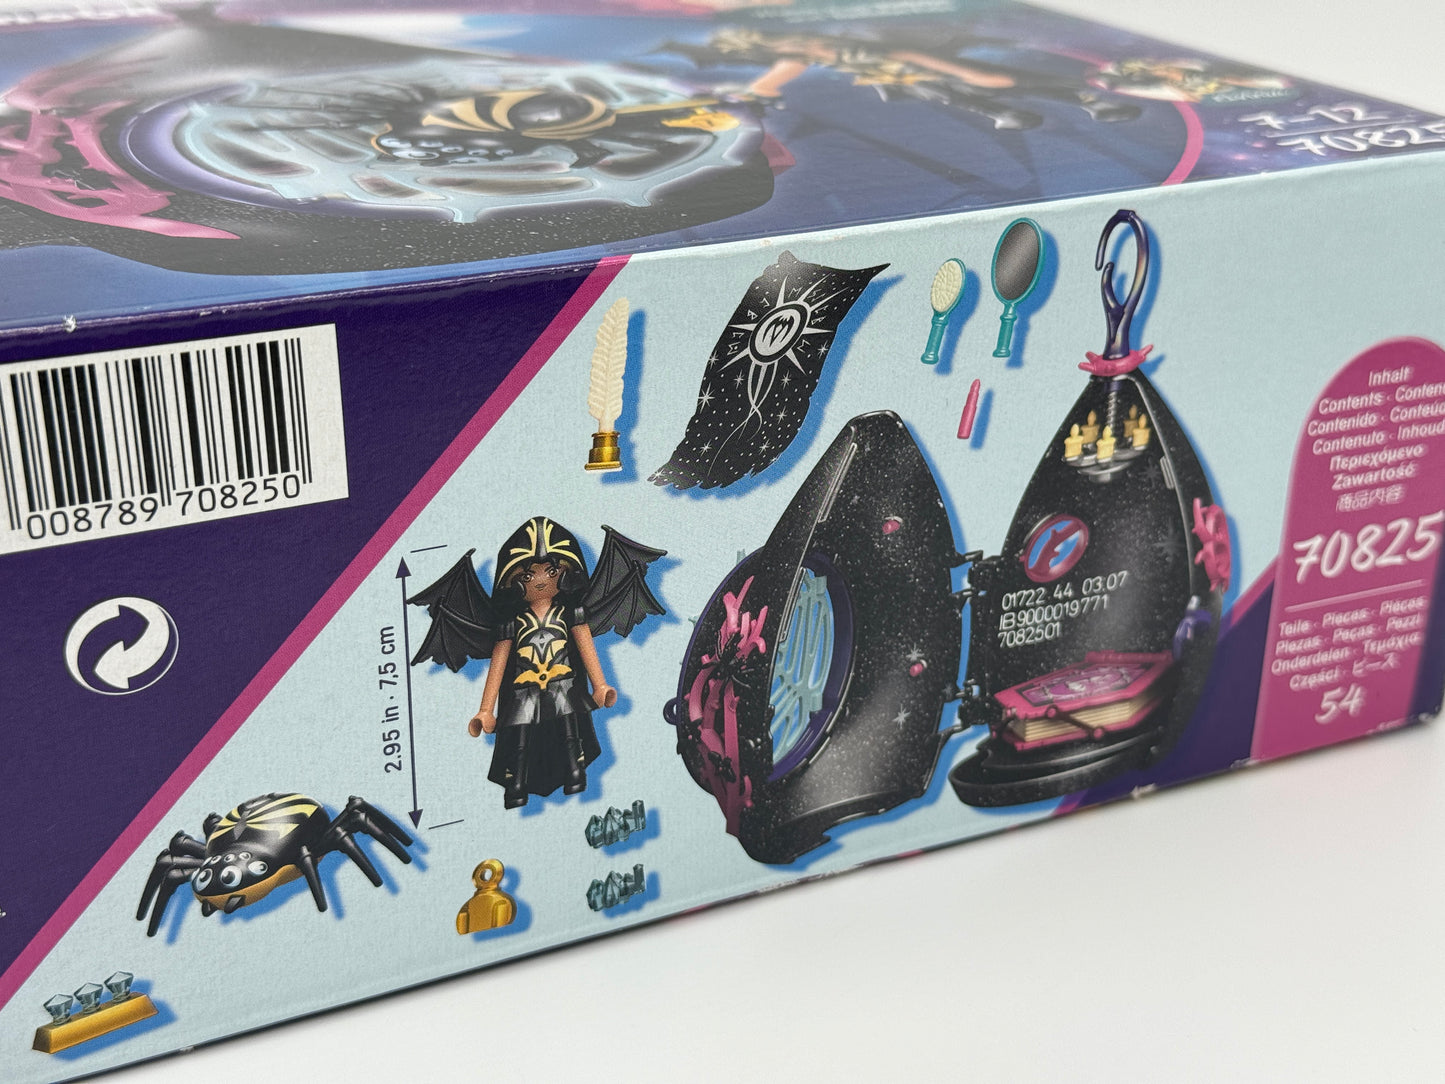 Playmobil "Unterschlupf der Bat Fairies" Adventures of Ayuma Spielset 70825 (2023)